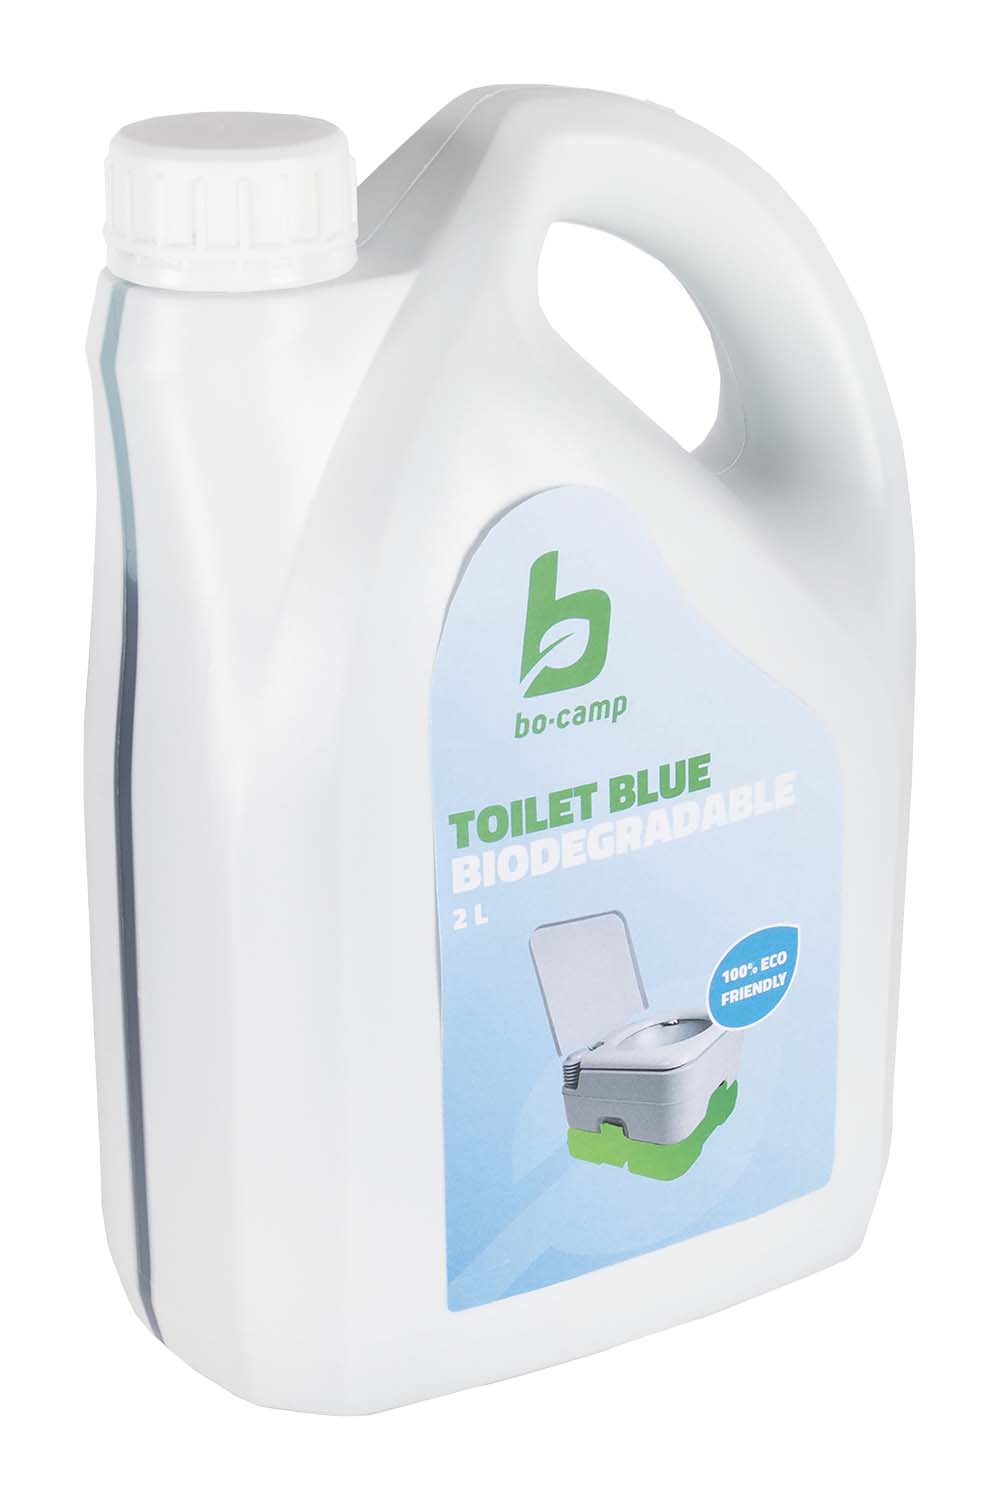 5507100 Bo-Camp Toilet fluid blue es un líquido higiénico biodegradable para uso diario en el depósito de residuos del inodoro portátil. El líquido inodoro Bo-Camp azul tiene un olor muy agradable y mantiene limpio y fresco el uso de su inodoro portátil al enmascarar los olores desagradables y la formación de gases. Una botella de 2 litros es adecuada para aproximadamente 20 recargas.